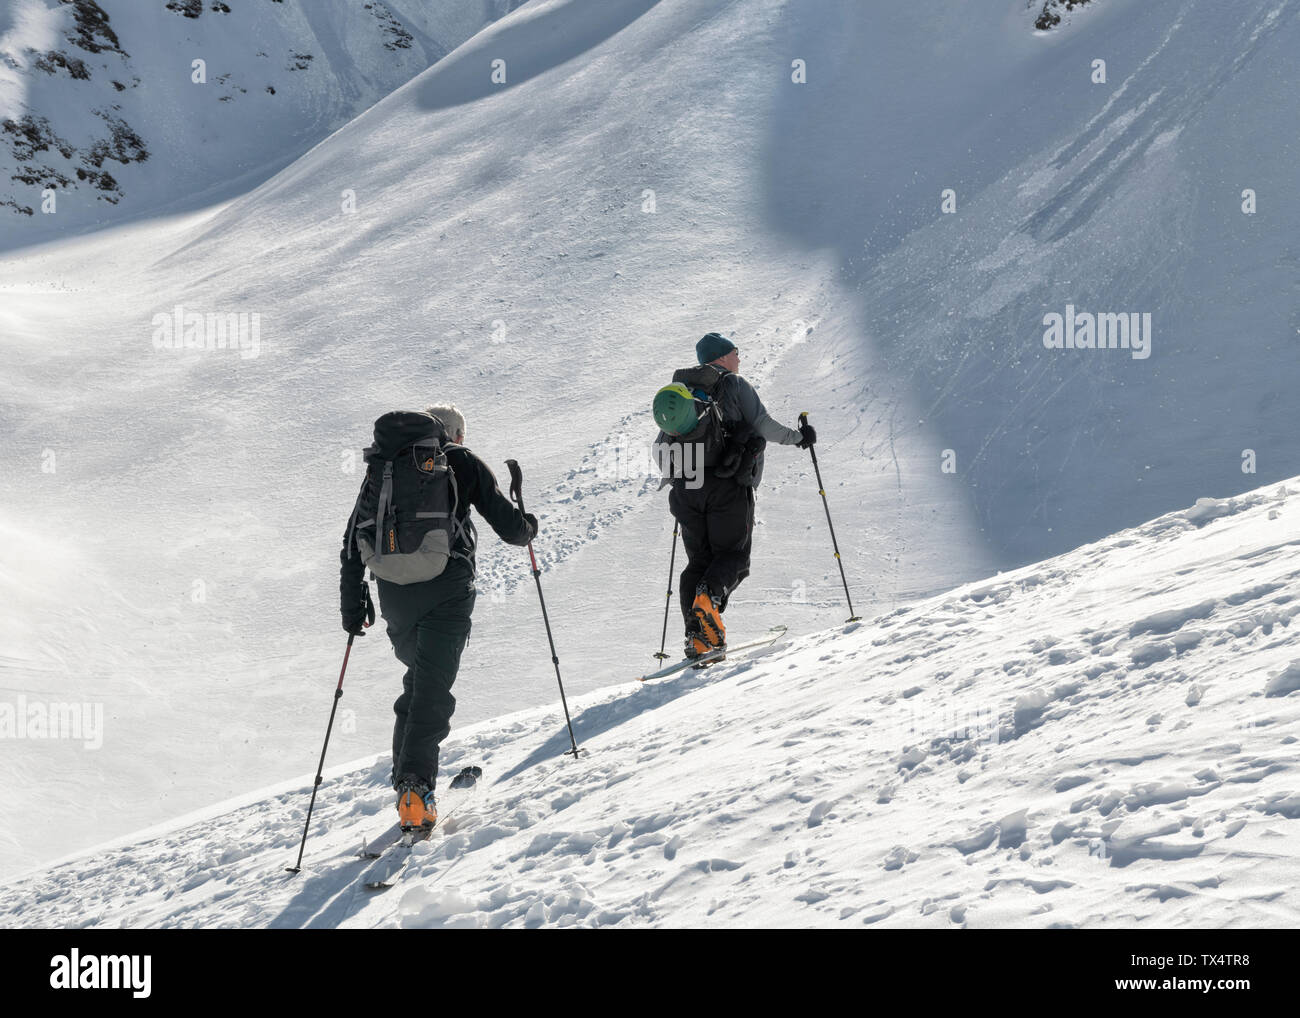 Georgia, Caucasus, Gudauri, two people on a ski tour Stock Photo